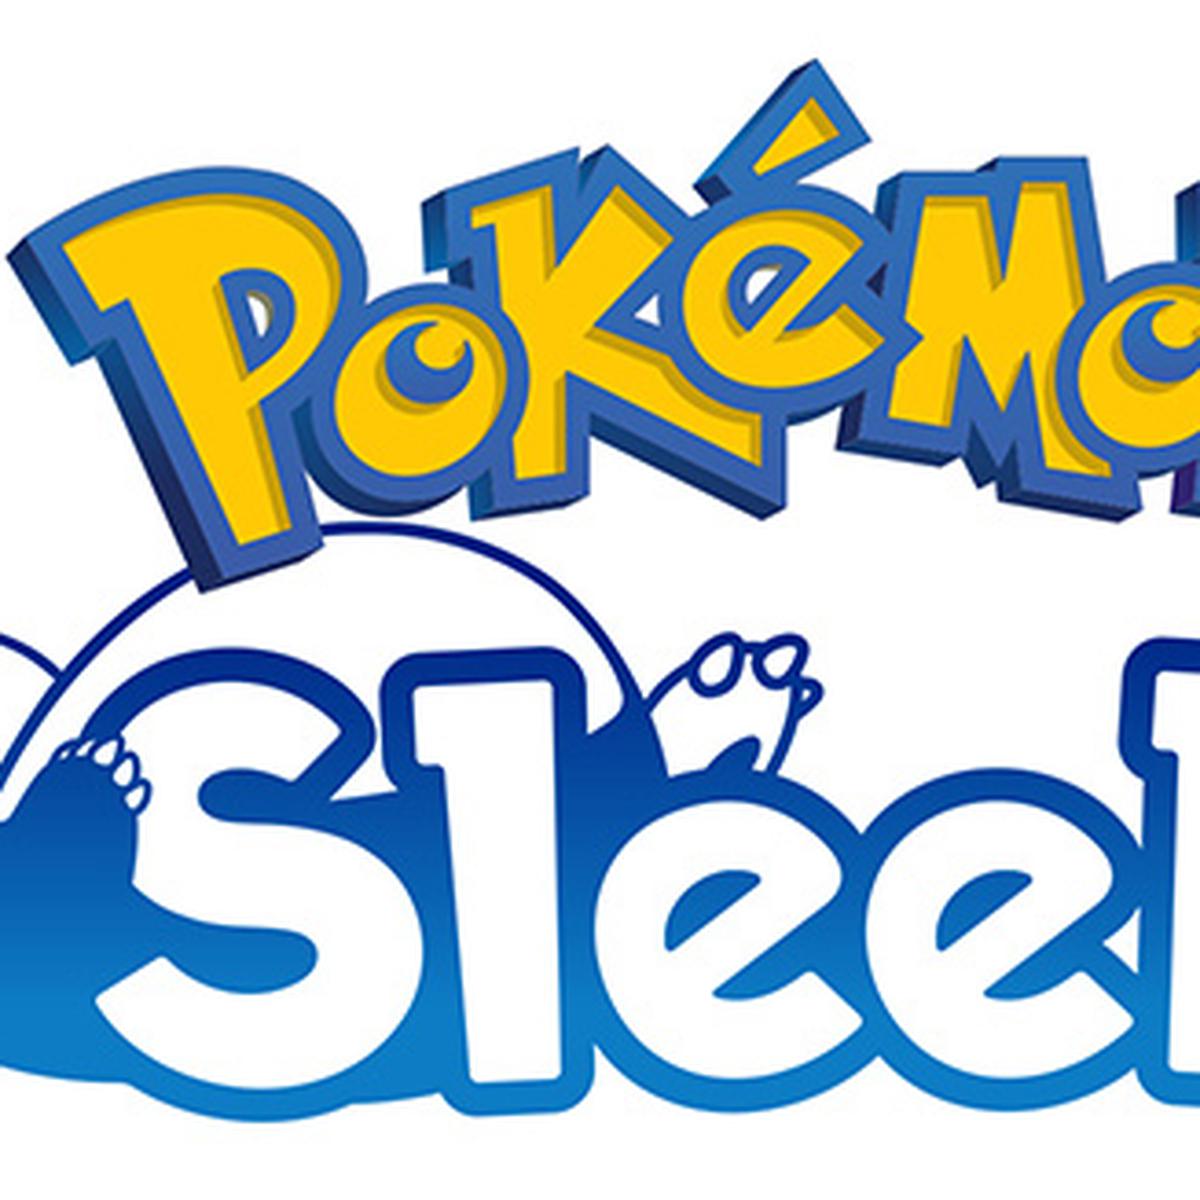 Pokémon lançará jogo para dormir este ano - Tecnologia - Estado de Minas